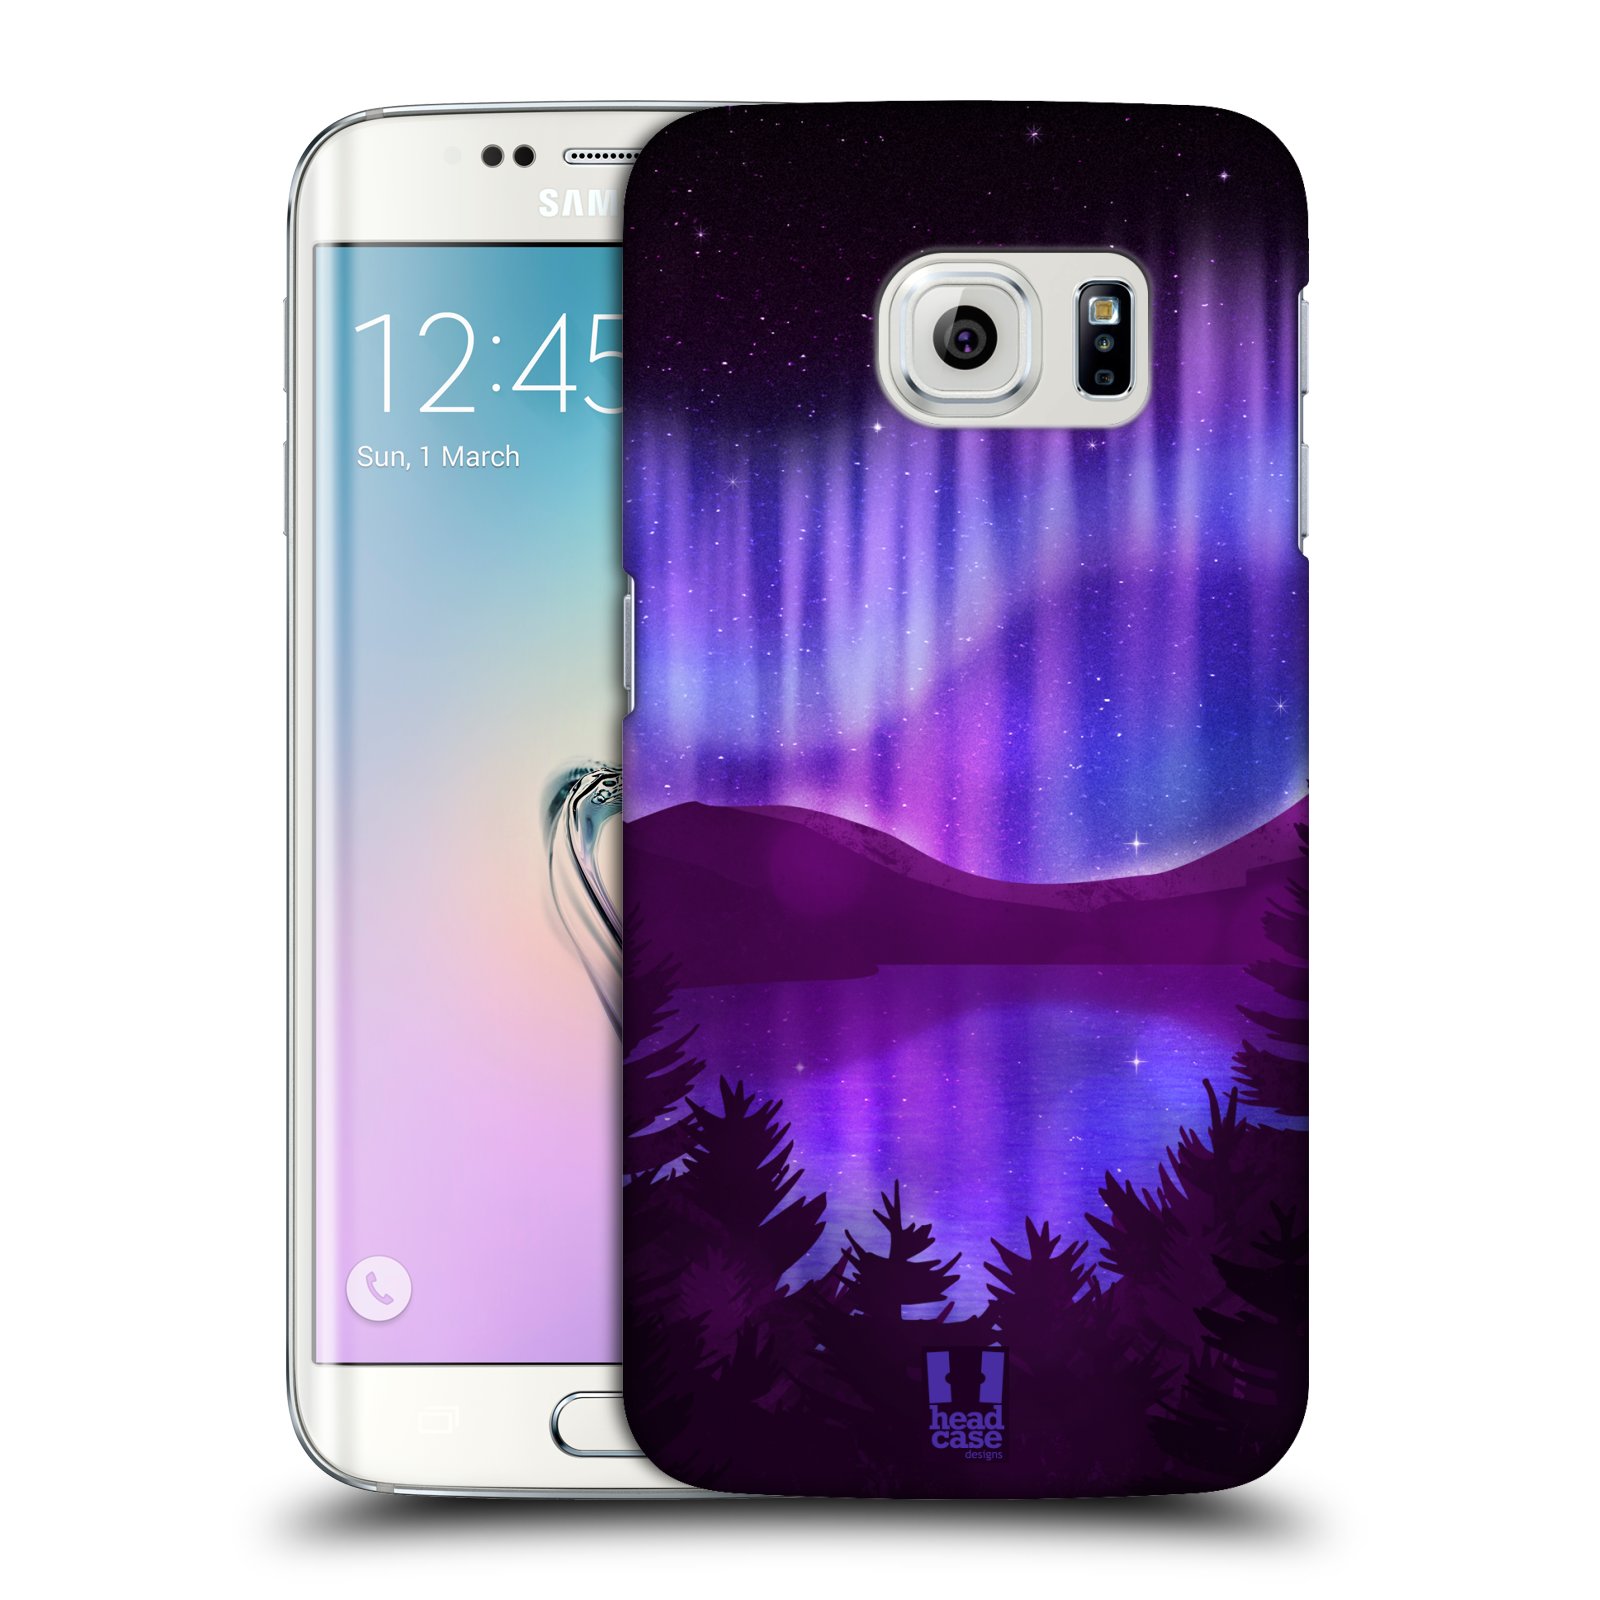 Zadní obal pro mobil Samsung Galaxy S6 EDGE - HEAD CASE - Polární záře jezero, hory, les